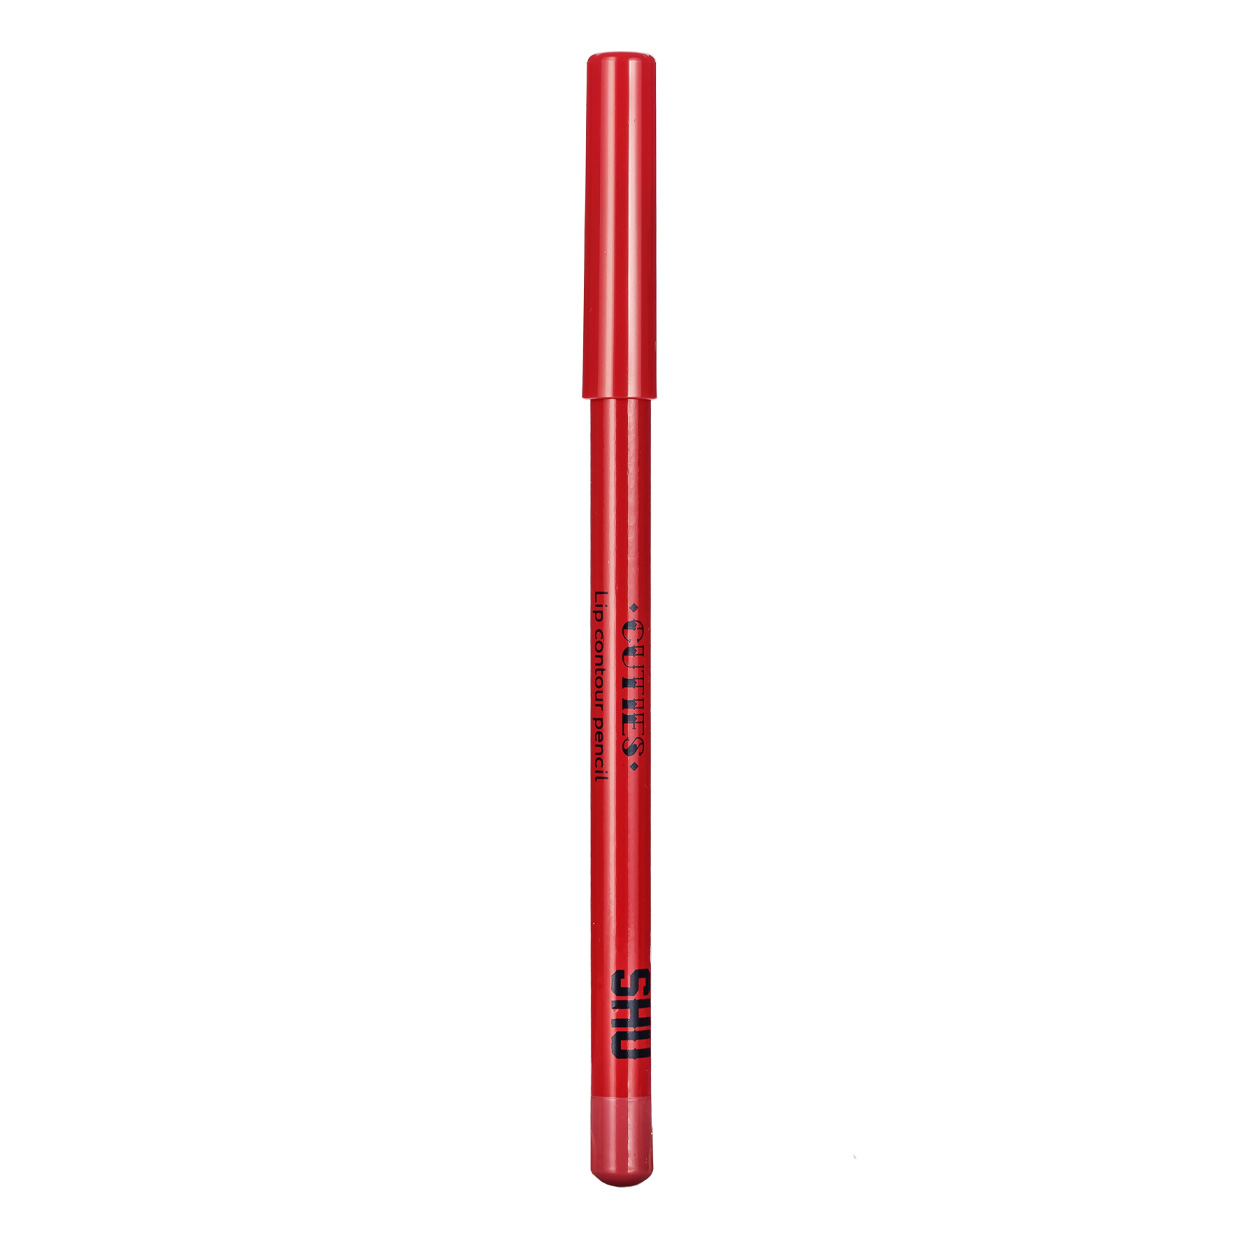 Карандаш для губ SHU Cuties контурный, сатиновый, тон 41 Летний розовый, 0,78 г карандаш для губ shu cuties контурный сатиновый тон 51 светлый терракотовый 0 78 г